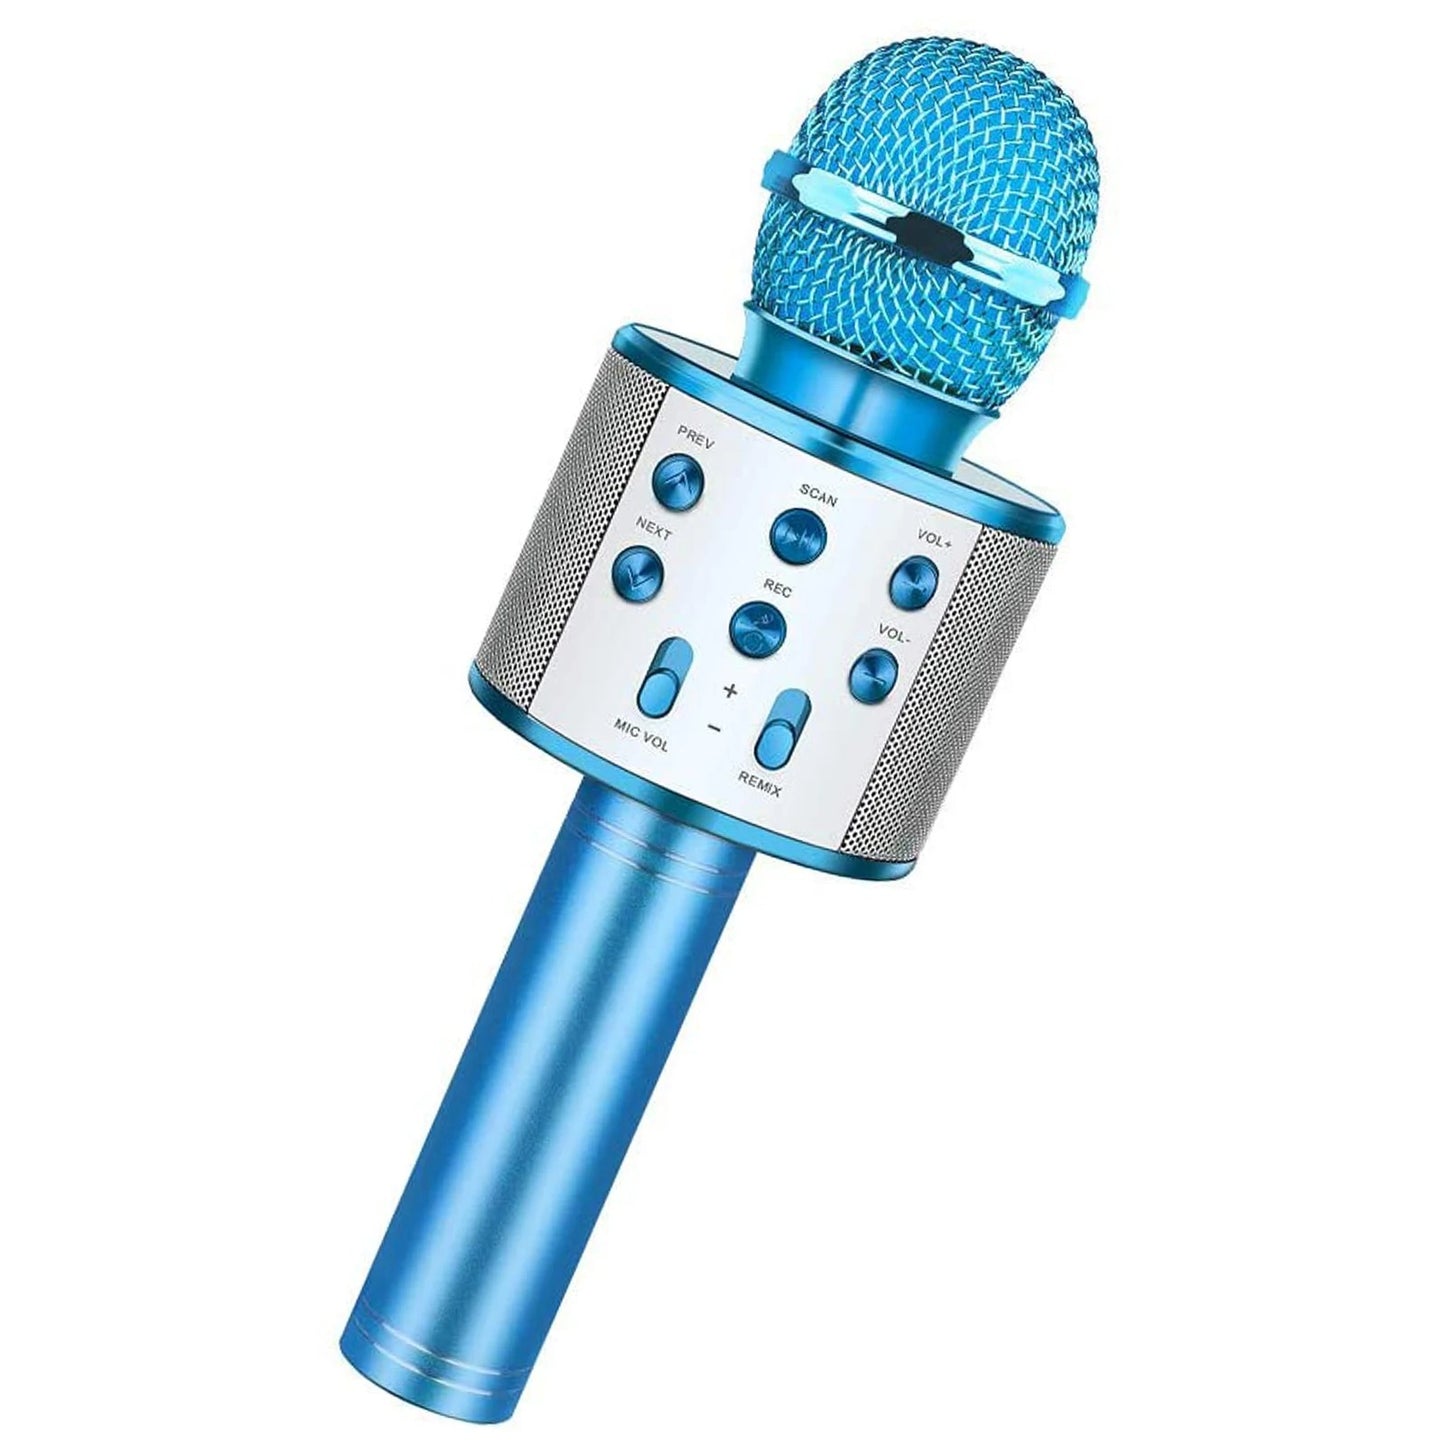 Microfone Karaokê Portátil com Editor de Voz - 5 Tipos Diferentes de Vozes